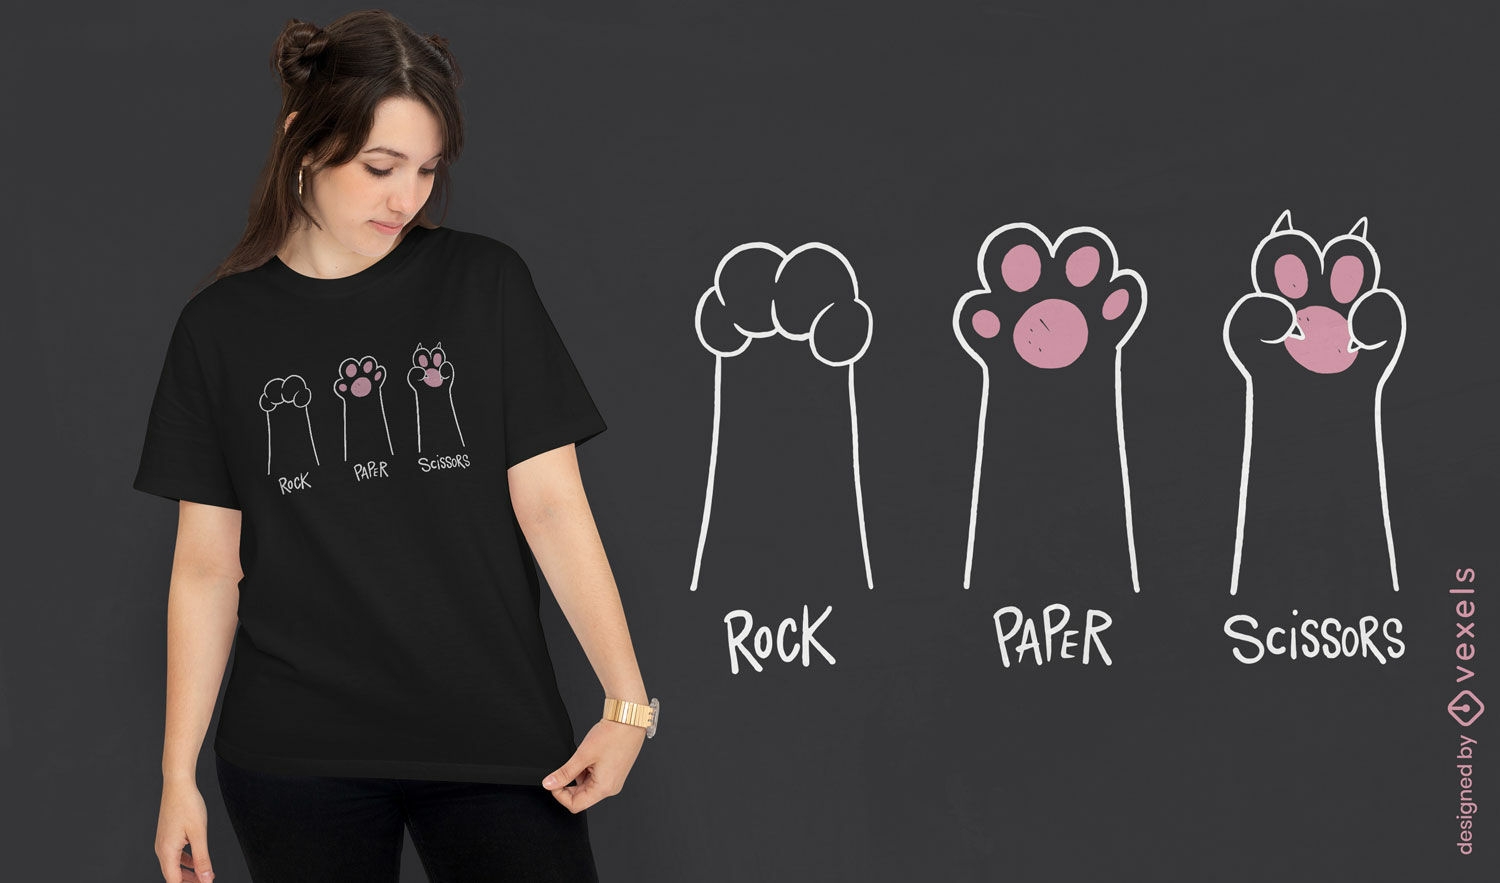 Dise?o minimalista de camiseta de gato piedra, papel y tijera.